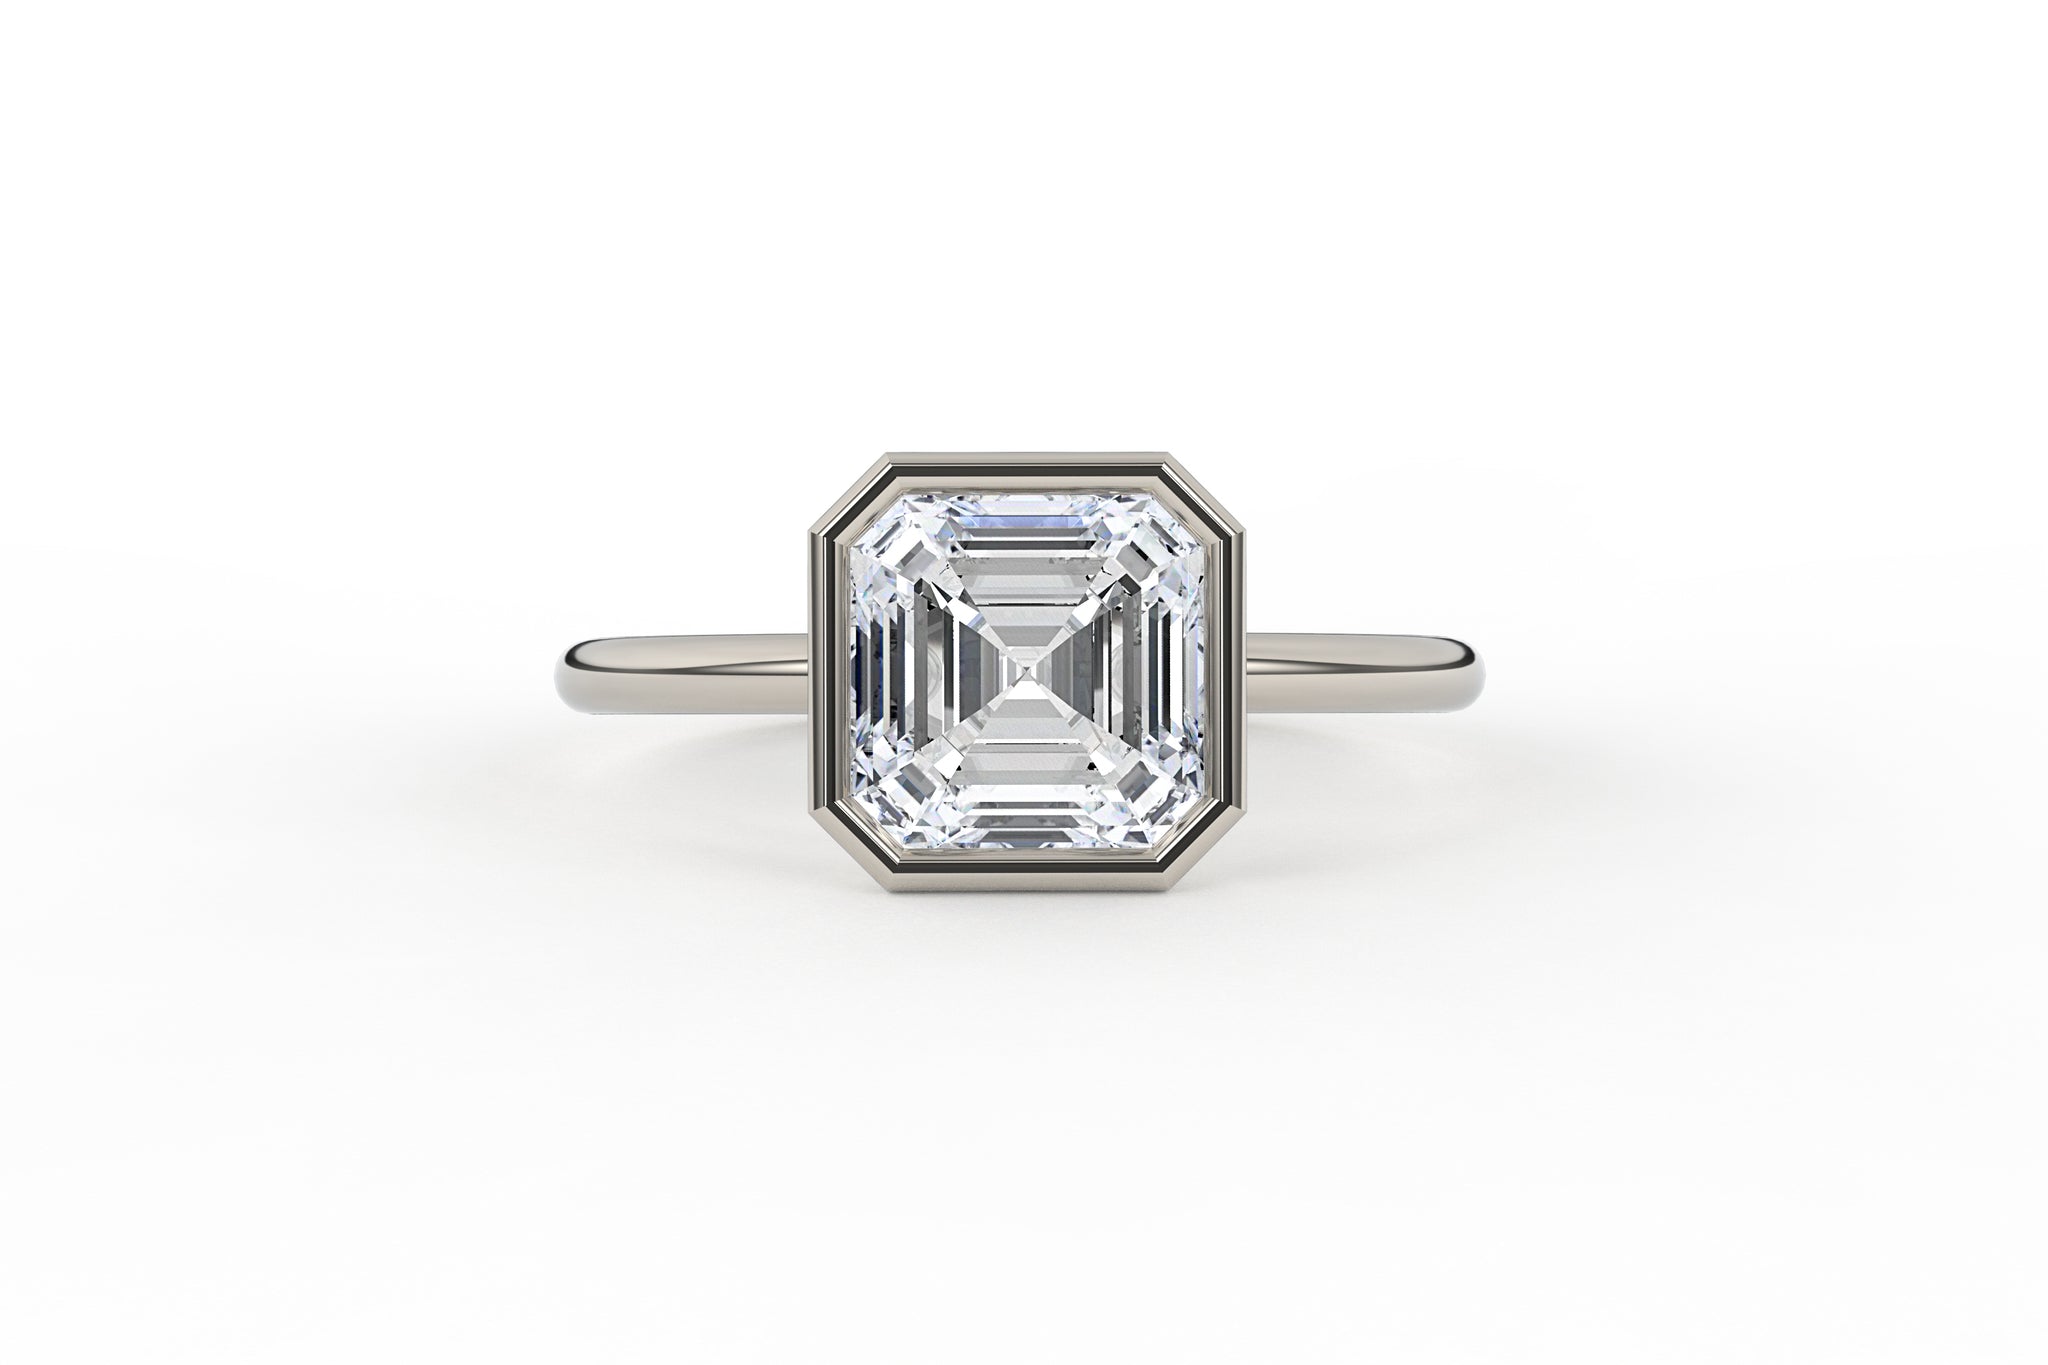 Asscher Cut Low Profile Bezel Solitaire Lab Diamond Ring - S. Kind & Co